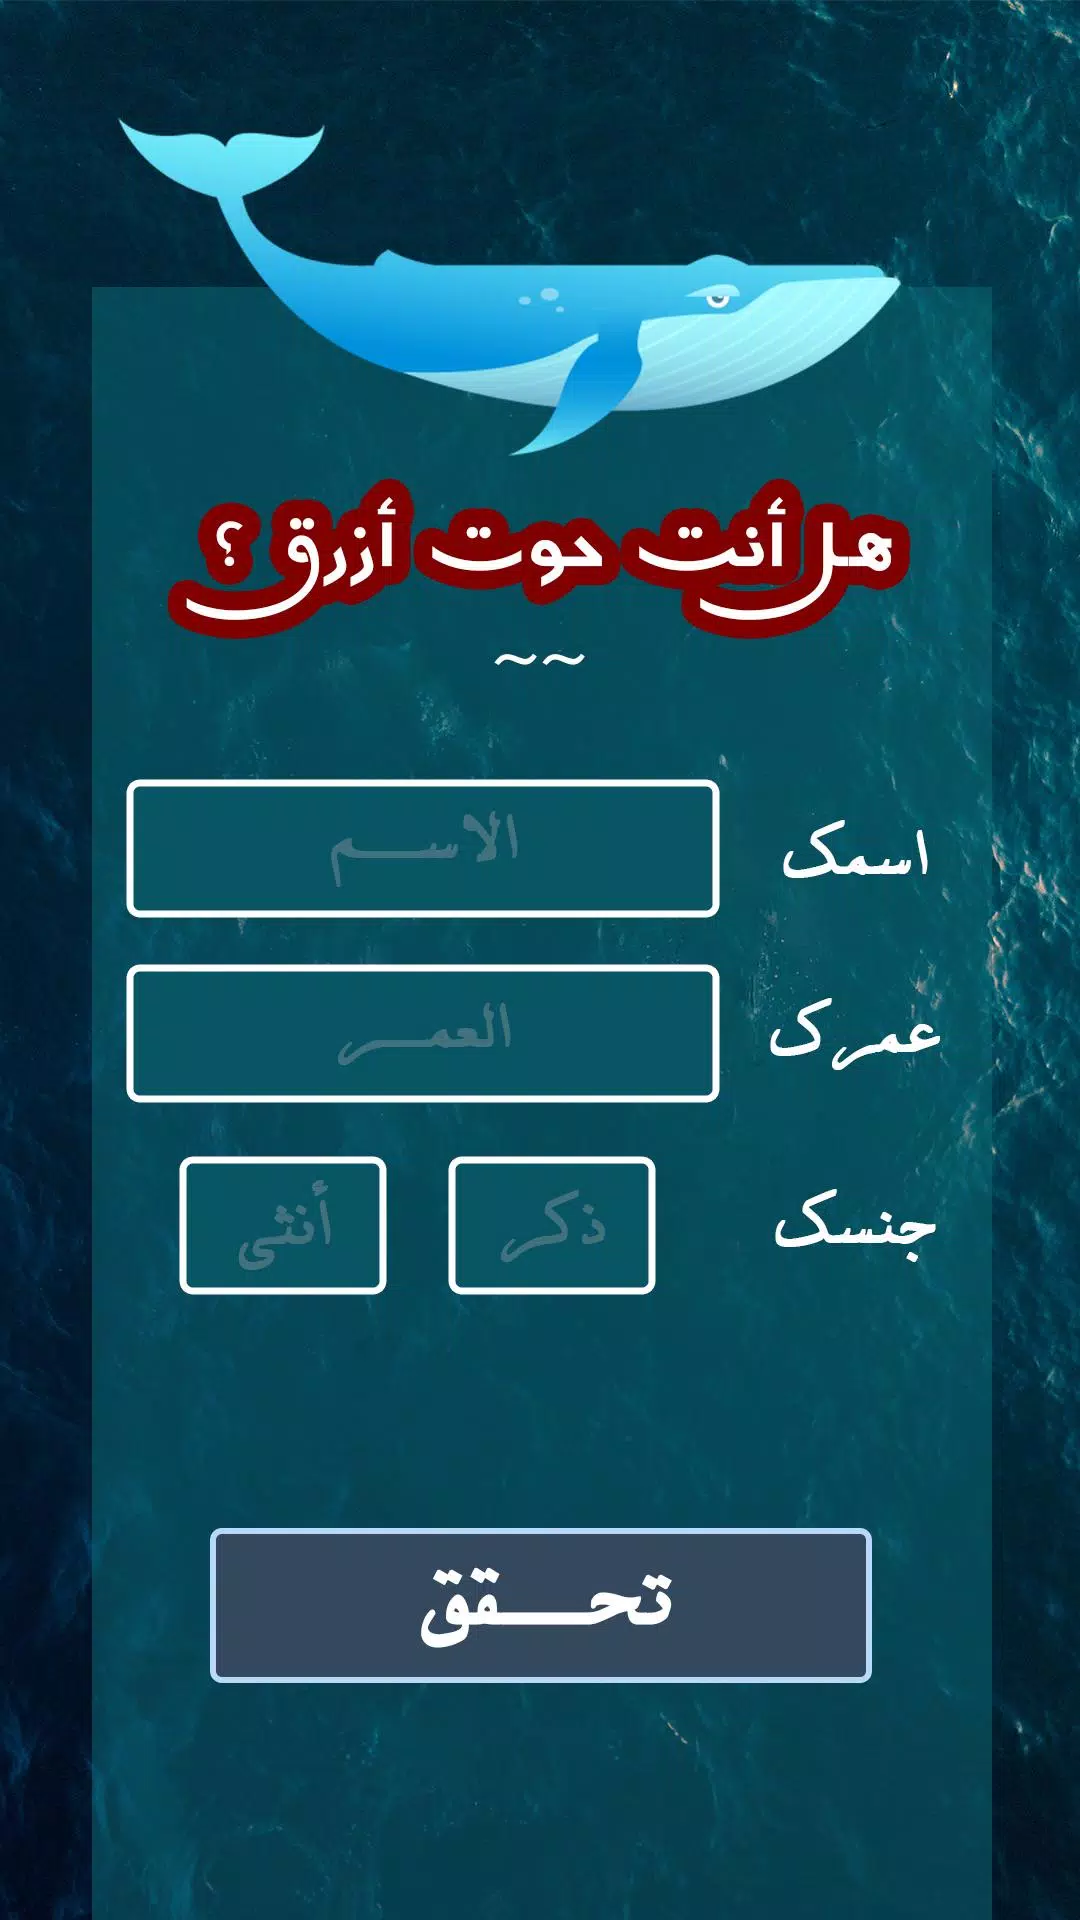 لعبة الحوت الأزرق: النسخة العربية APK للاندرويد تنزيل